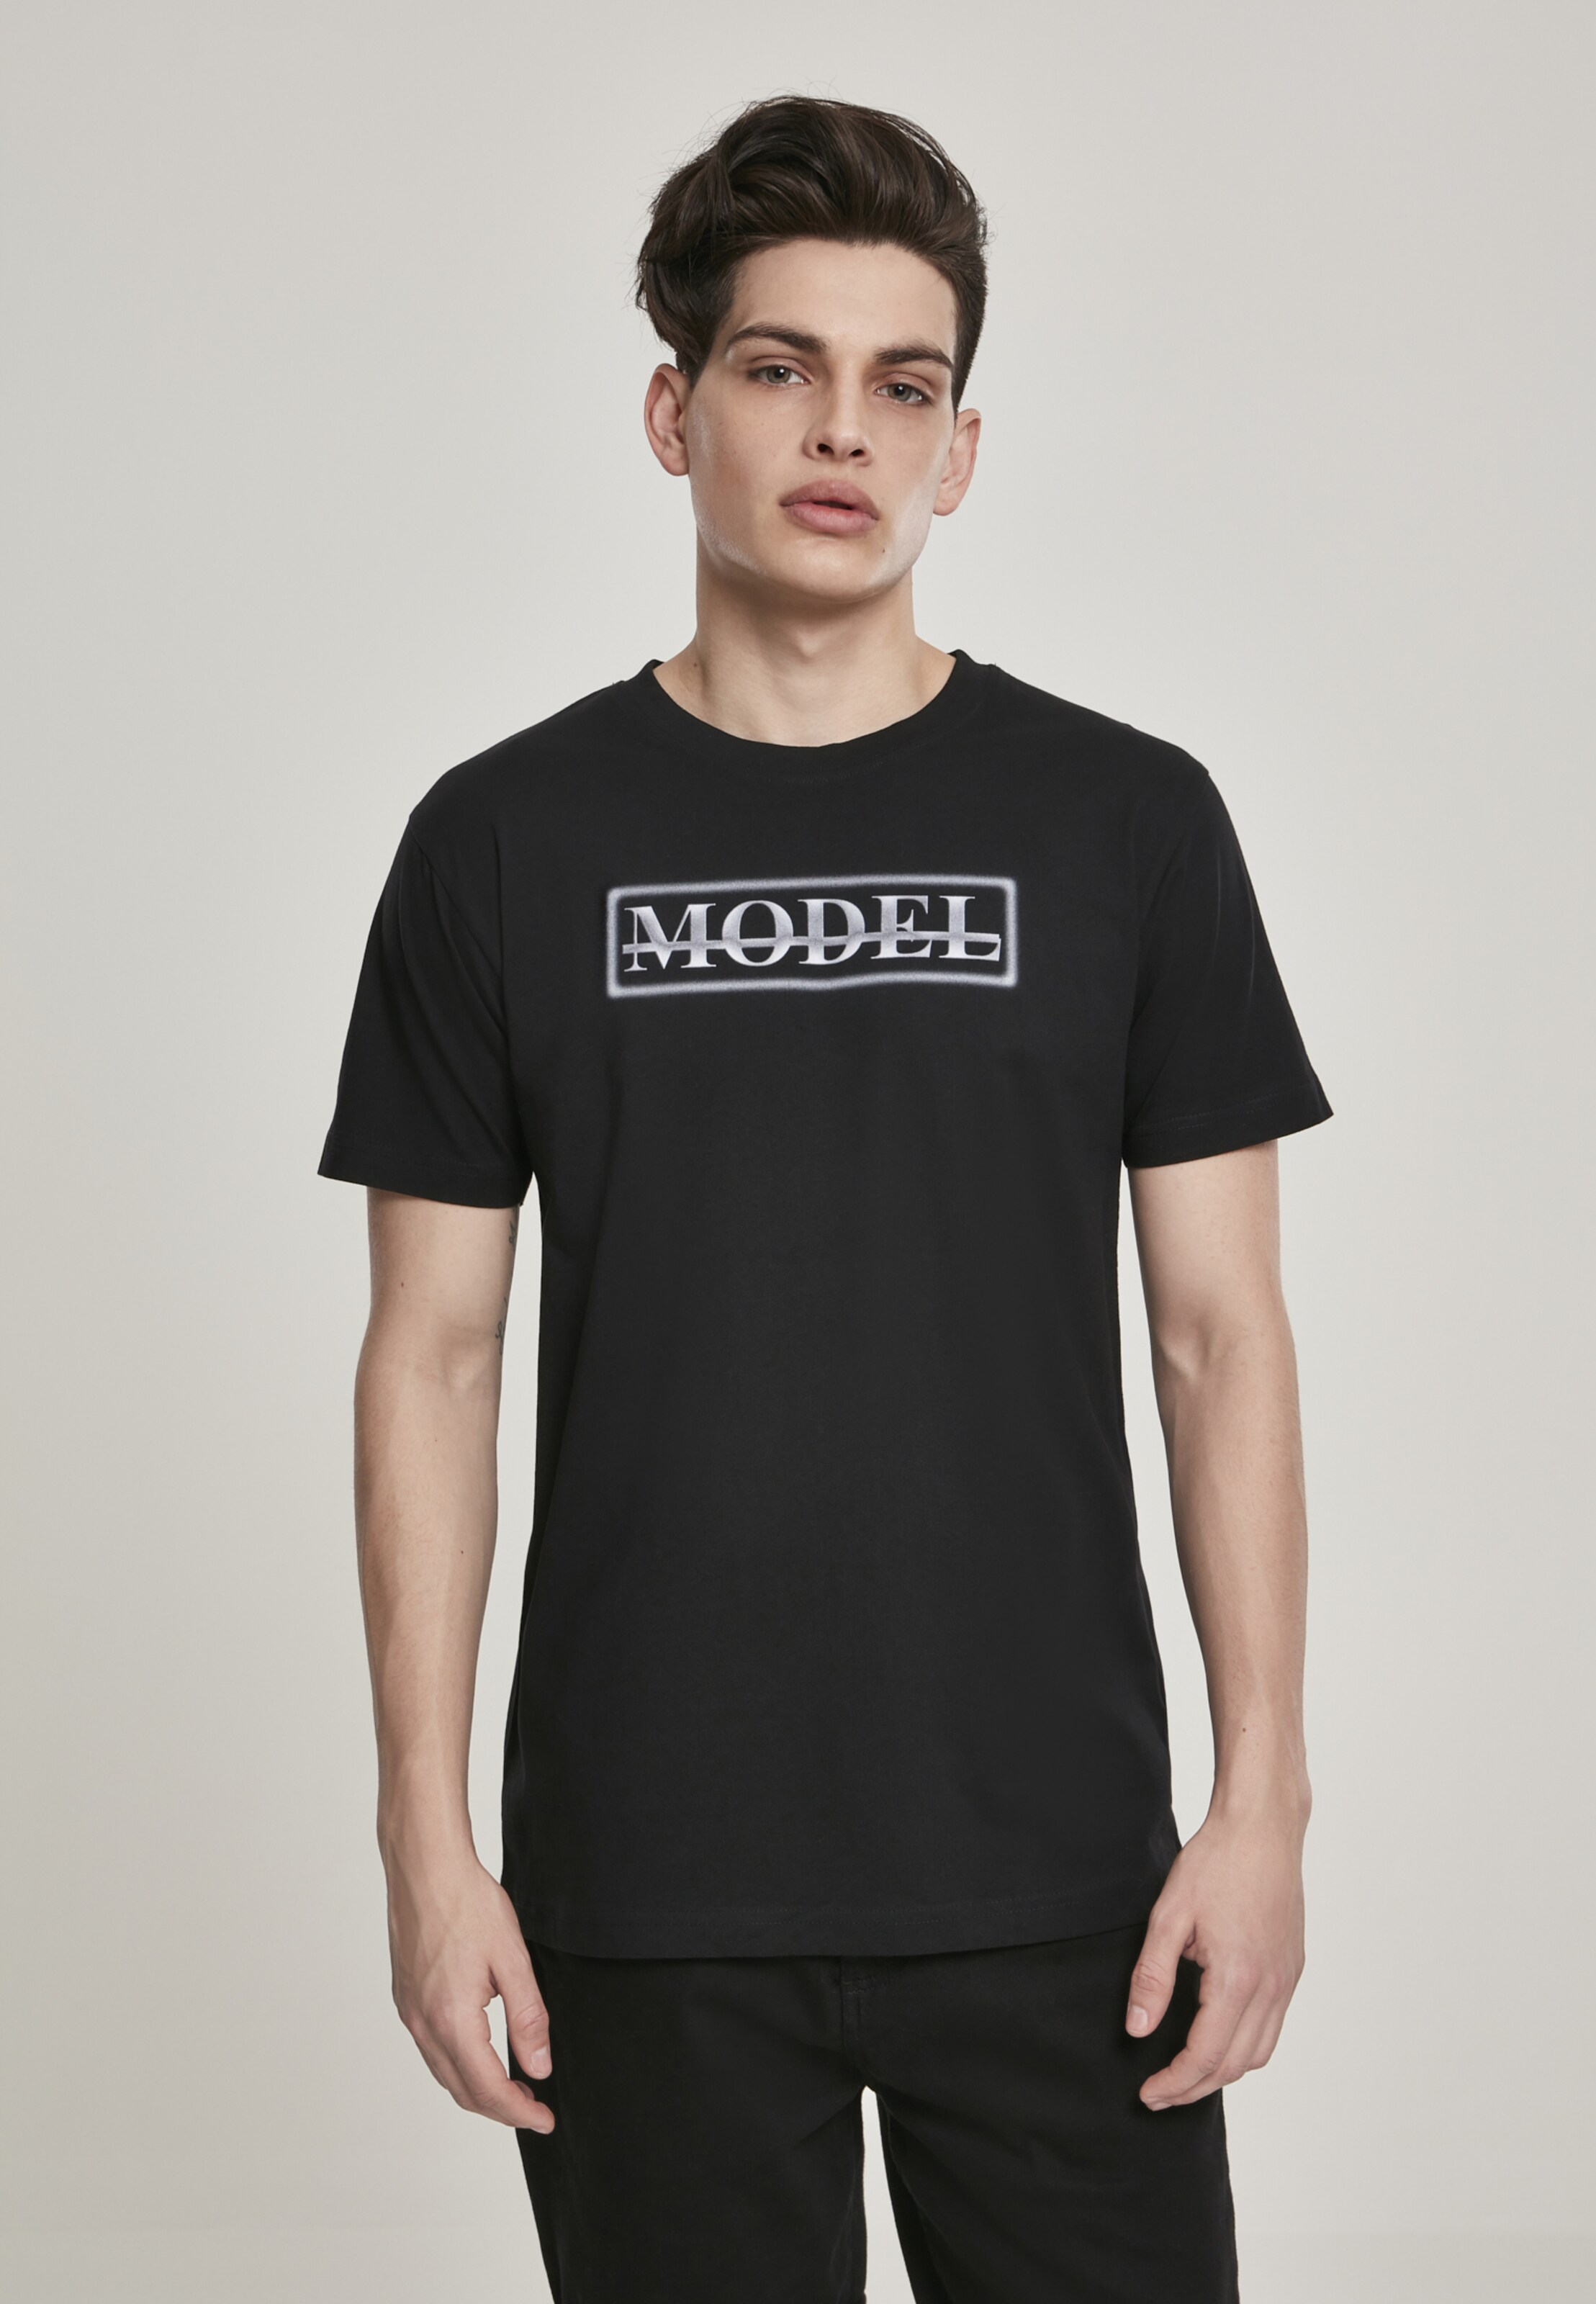 Männer Shirts Mister Tee T-Shirt in Schwarz - HJ36375